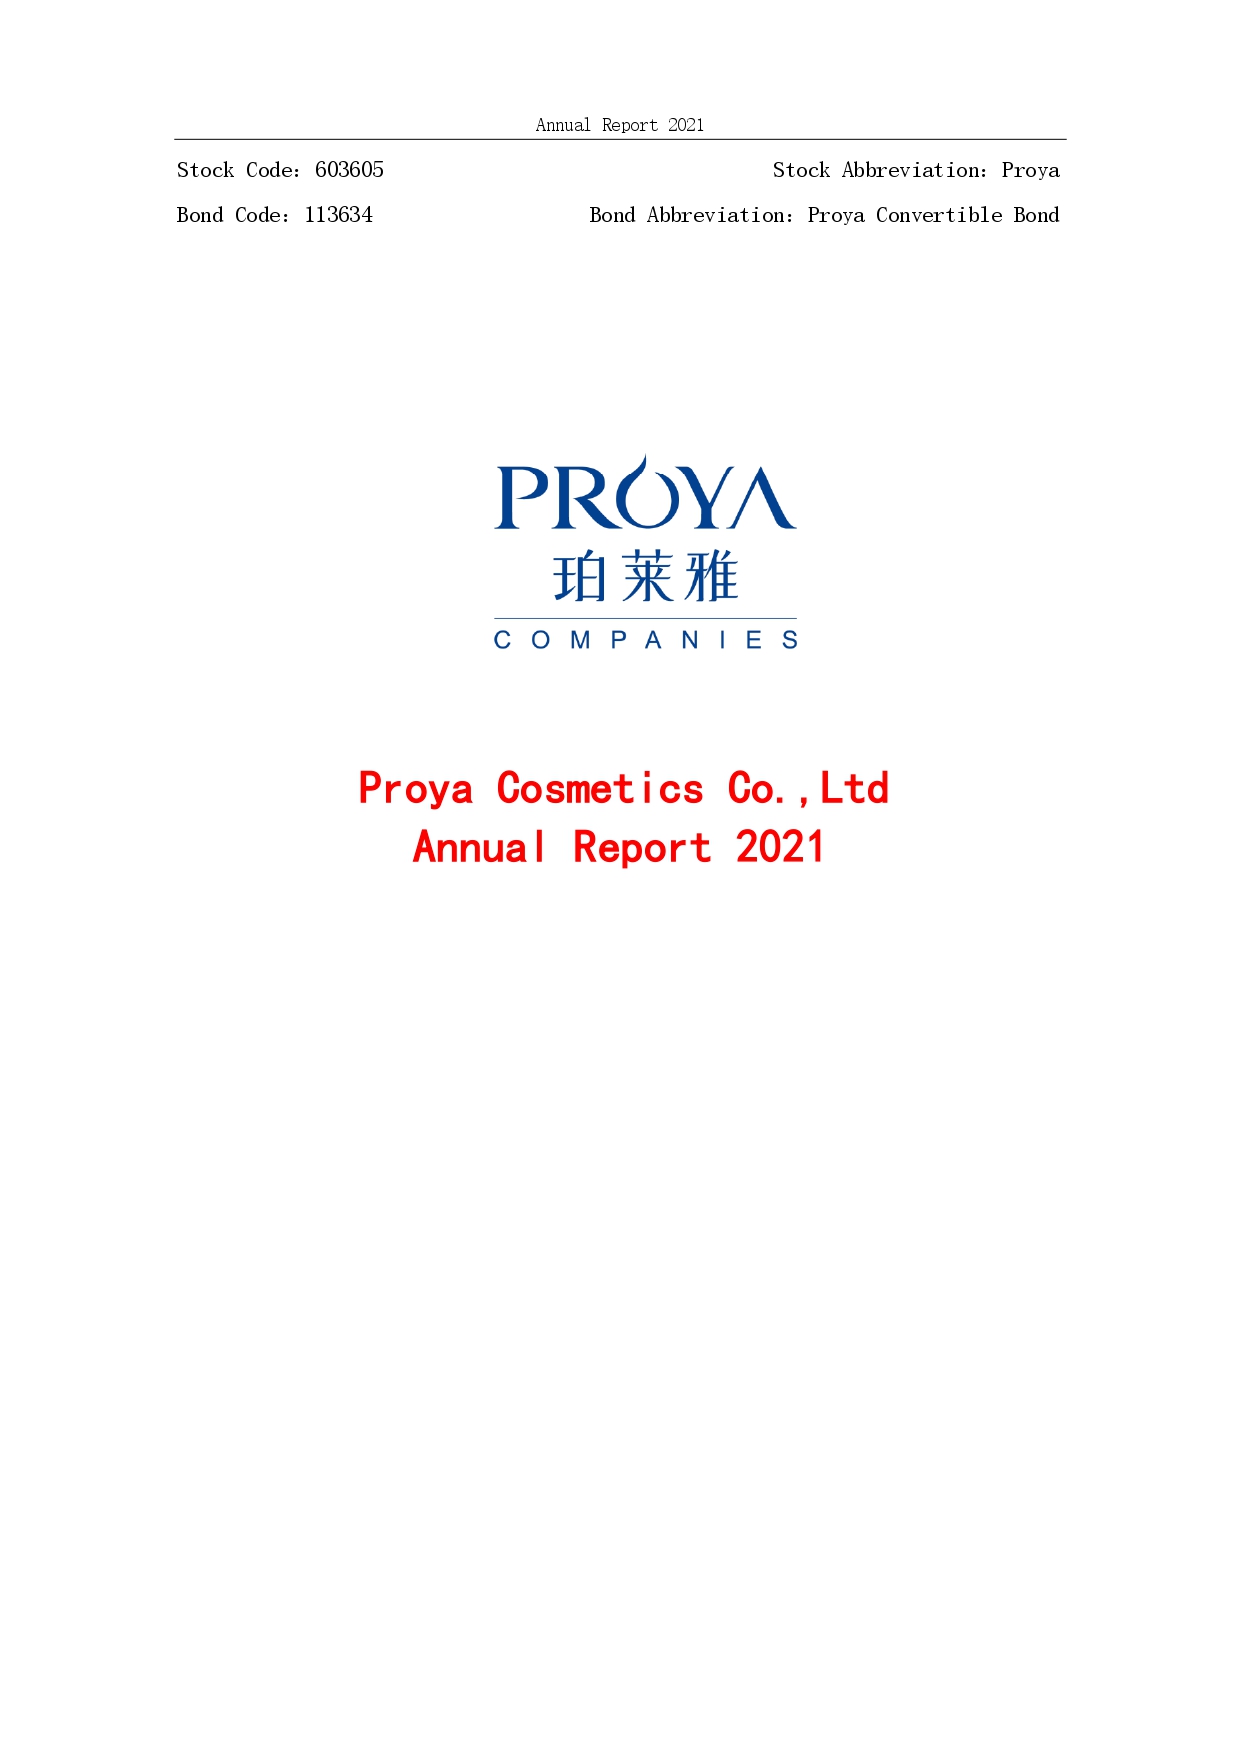 2021年年度报告封面_page-0001.jpg